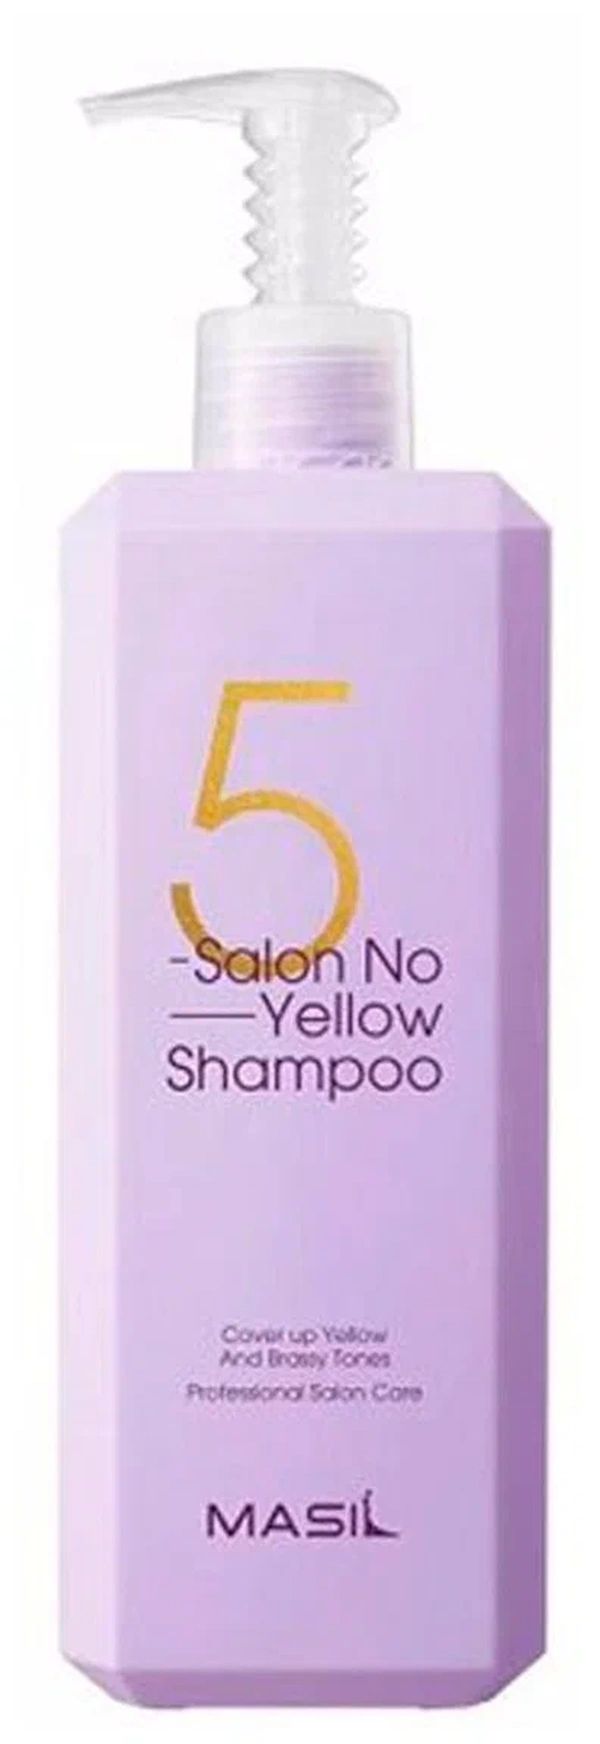 Тонирующий шампунь для осветленных волос MASIL 5 Salon No Yellow Shampoo 500 мл краска для волос schwarzkopf igora absolutes silverwhite холодная сирень 60 мл